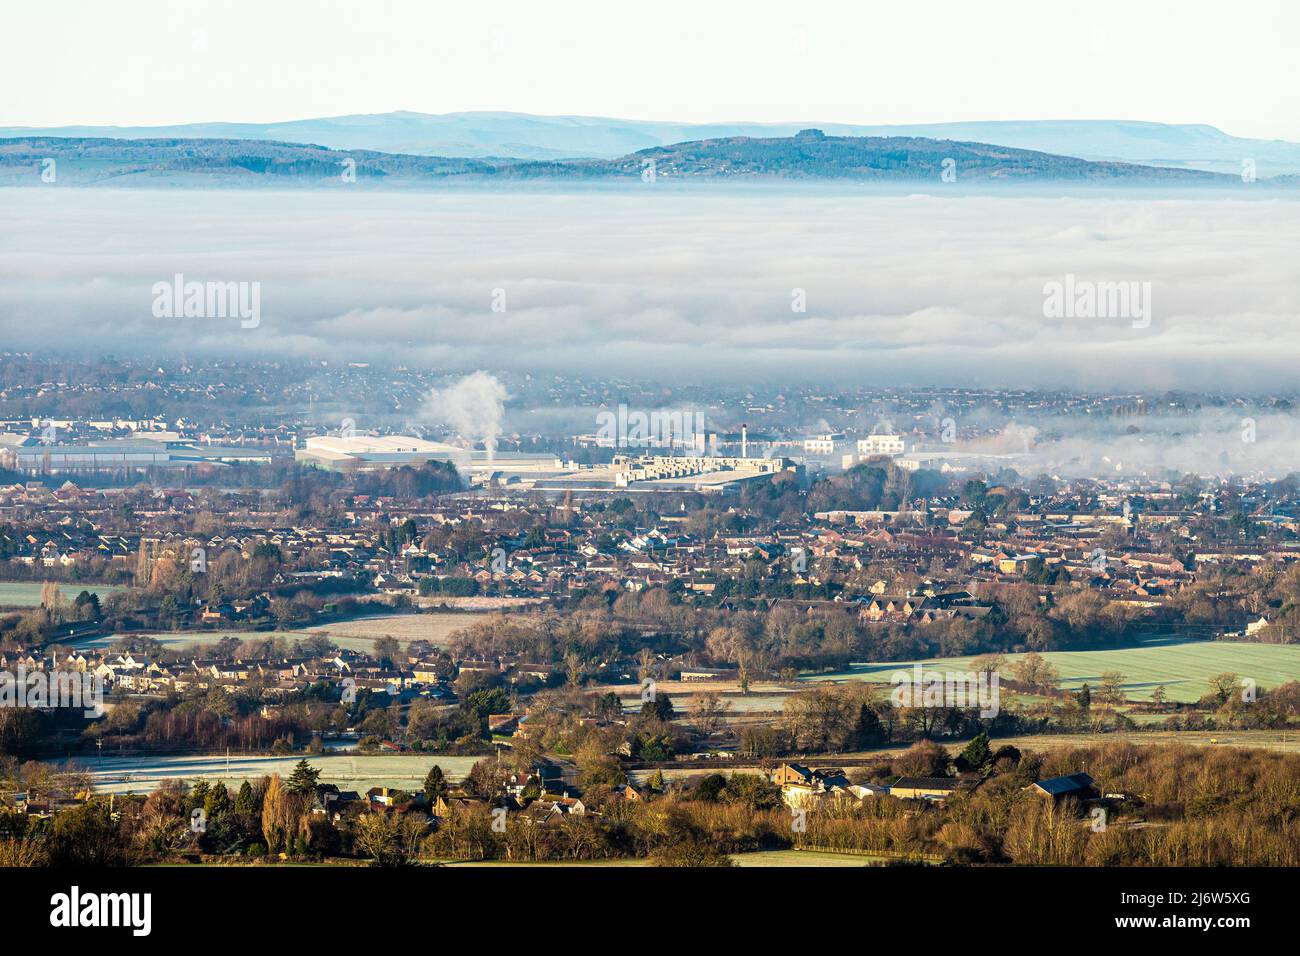 Une inversion de température qui provoque un brouillard pour obscurcir la ville de Gloucester, Angleterre Royaume-Uni. Brockworth est en premier plan et May Hill en arrière-plan. Banque D'Images